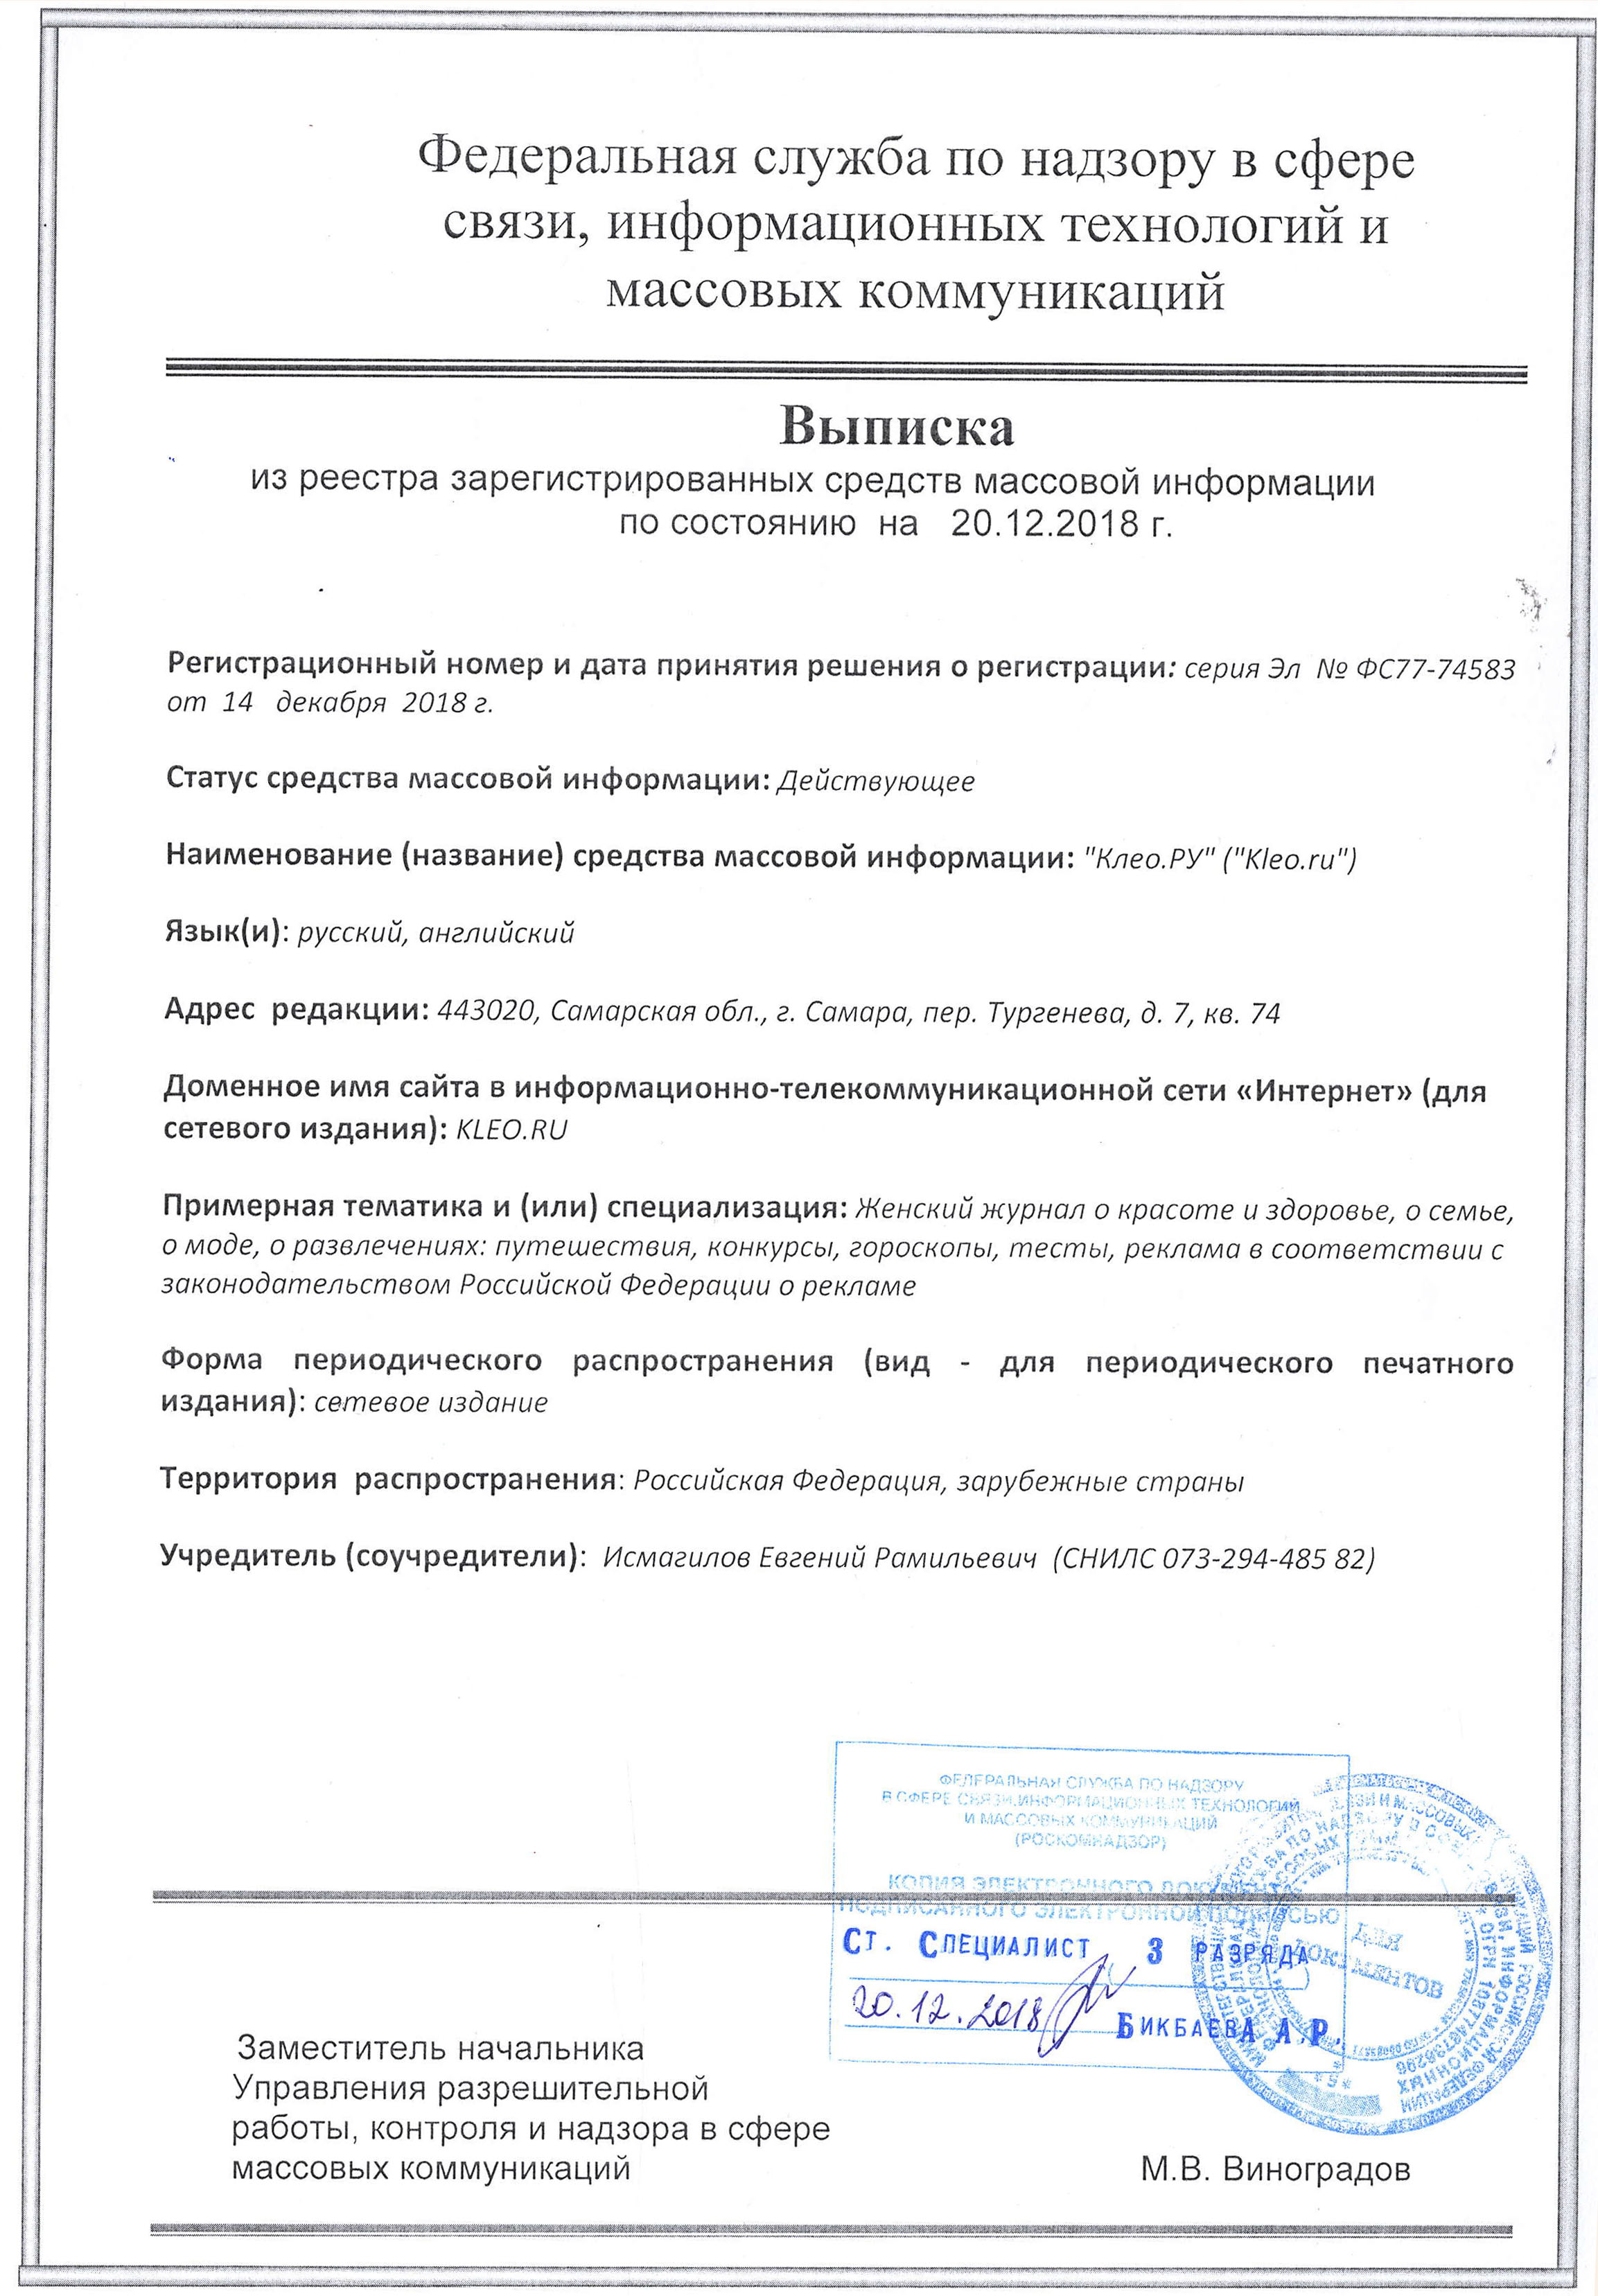 Сертификат о регистрации СМИ